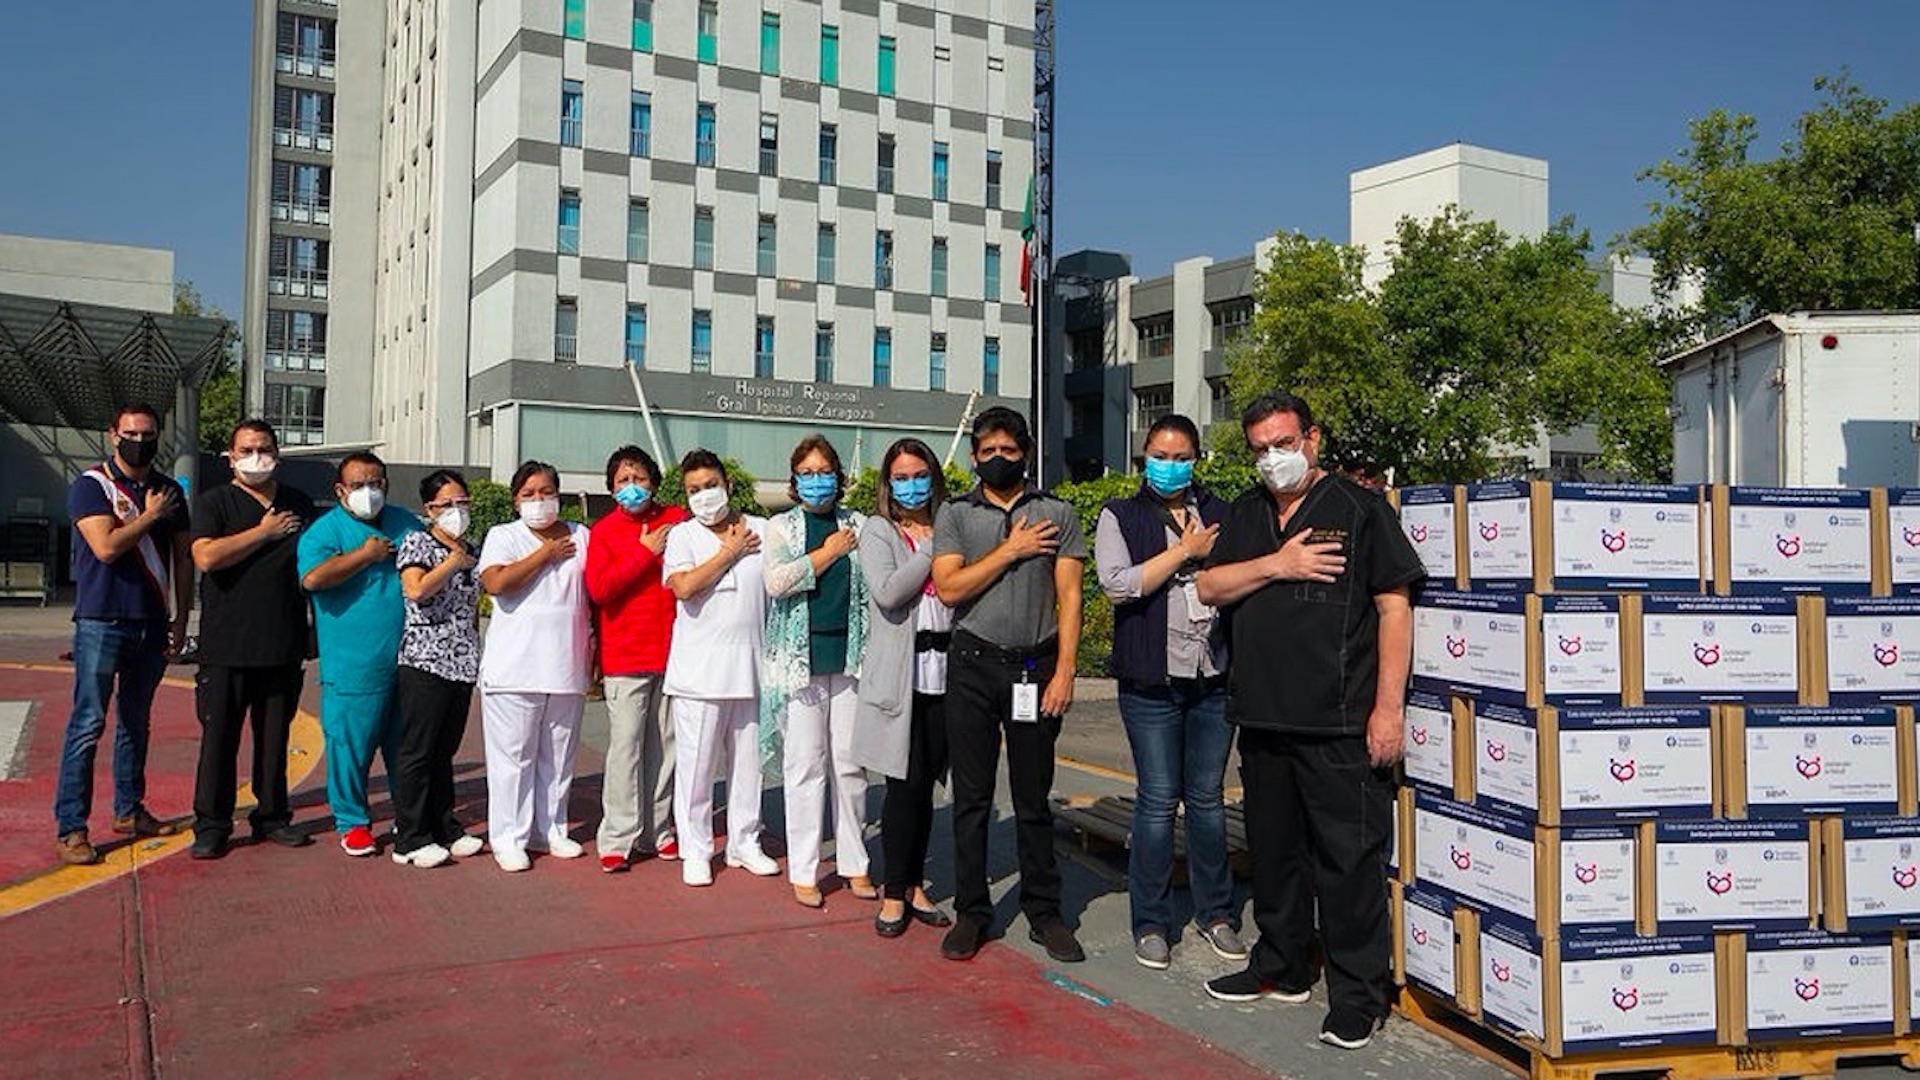 Juntos por la Salud, la iniciativa que se ganó el reconocimiento de la sociedad en la pandemia - hospital